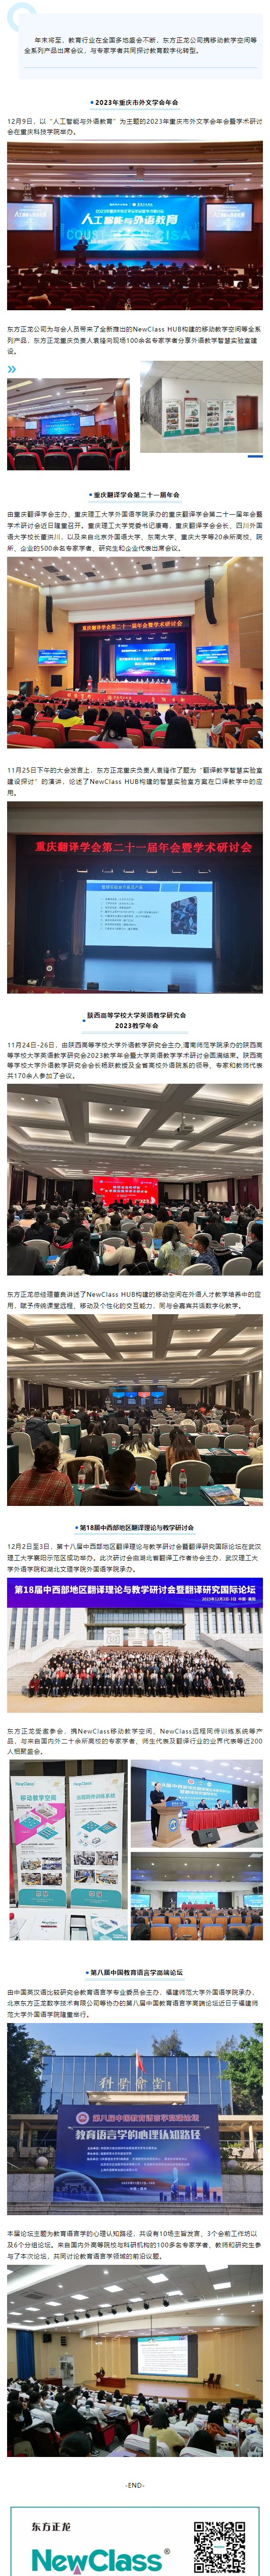 深化产教融合，助力教育数字化转型——NewClass亮相重庆、陕西、湖北、福建教育盛会